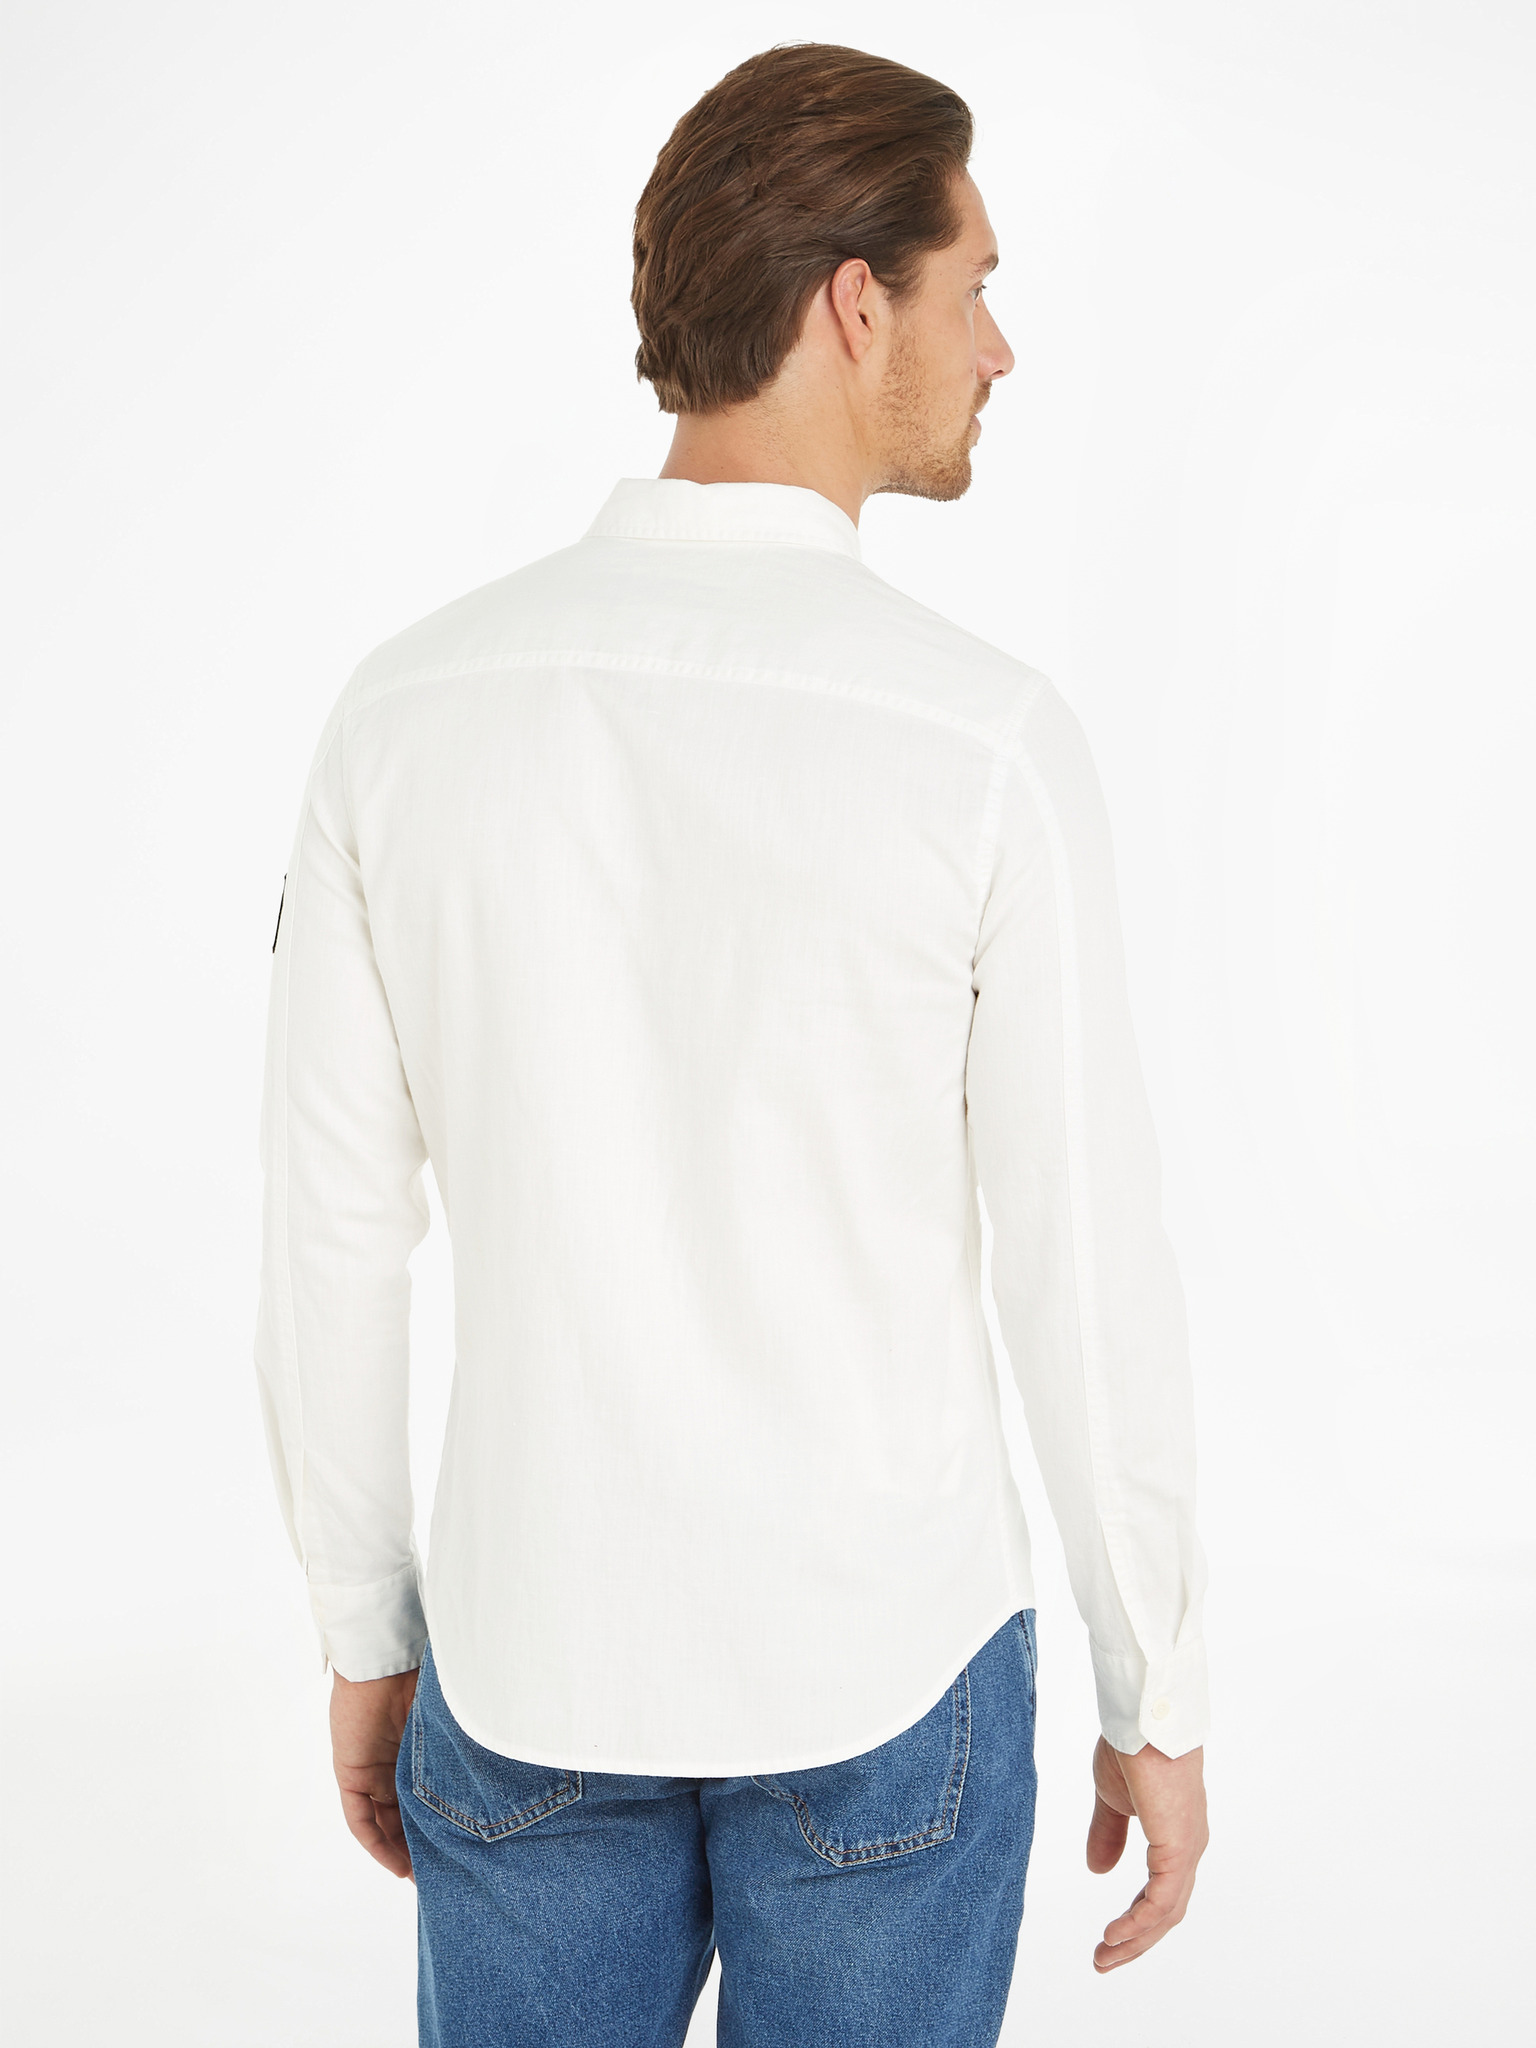 Klein - Calvin Jeans Shirt